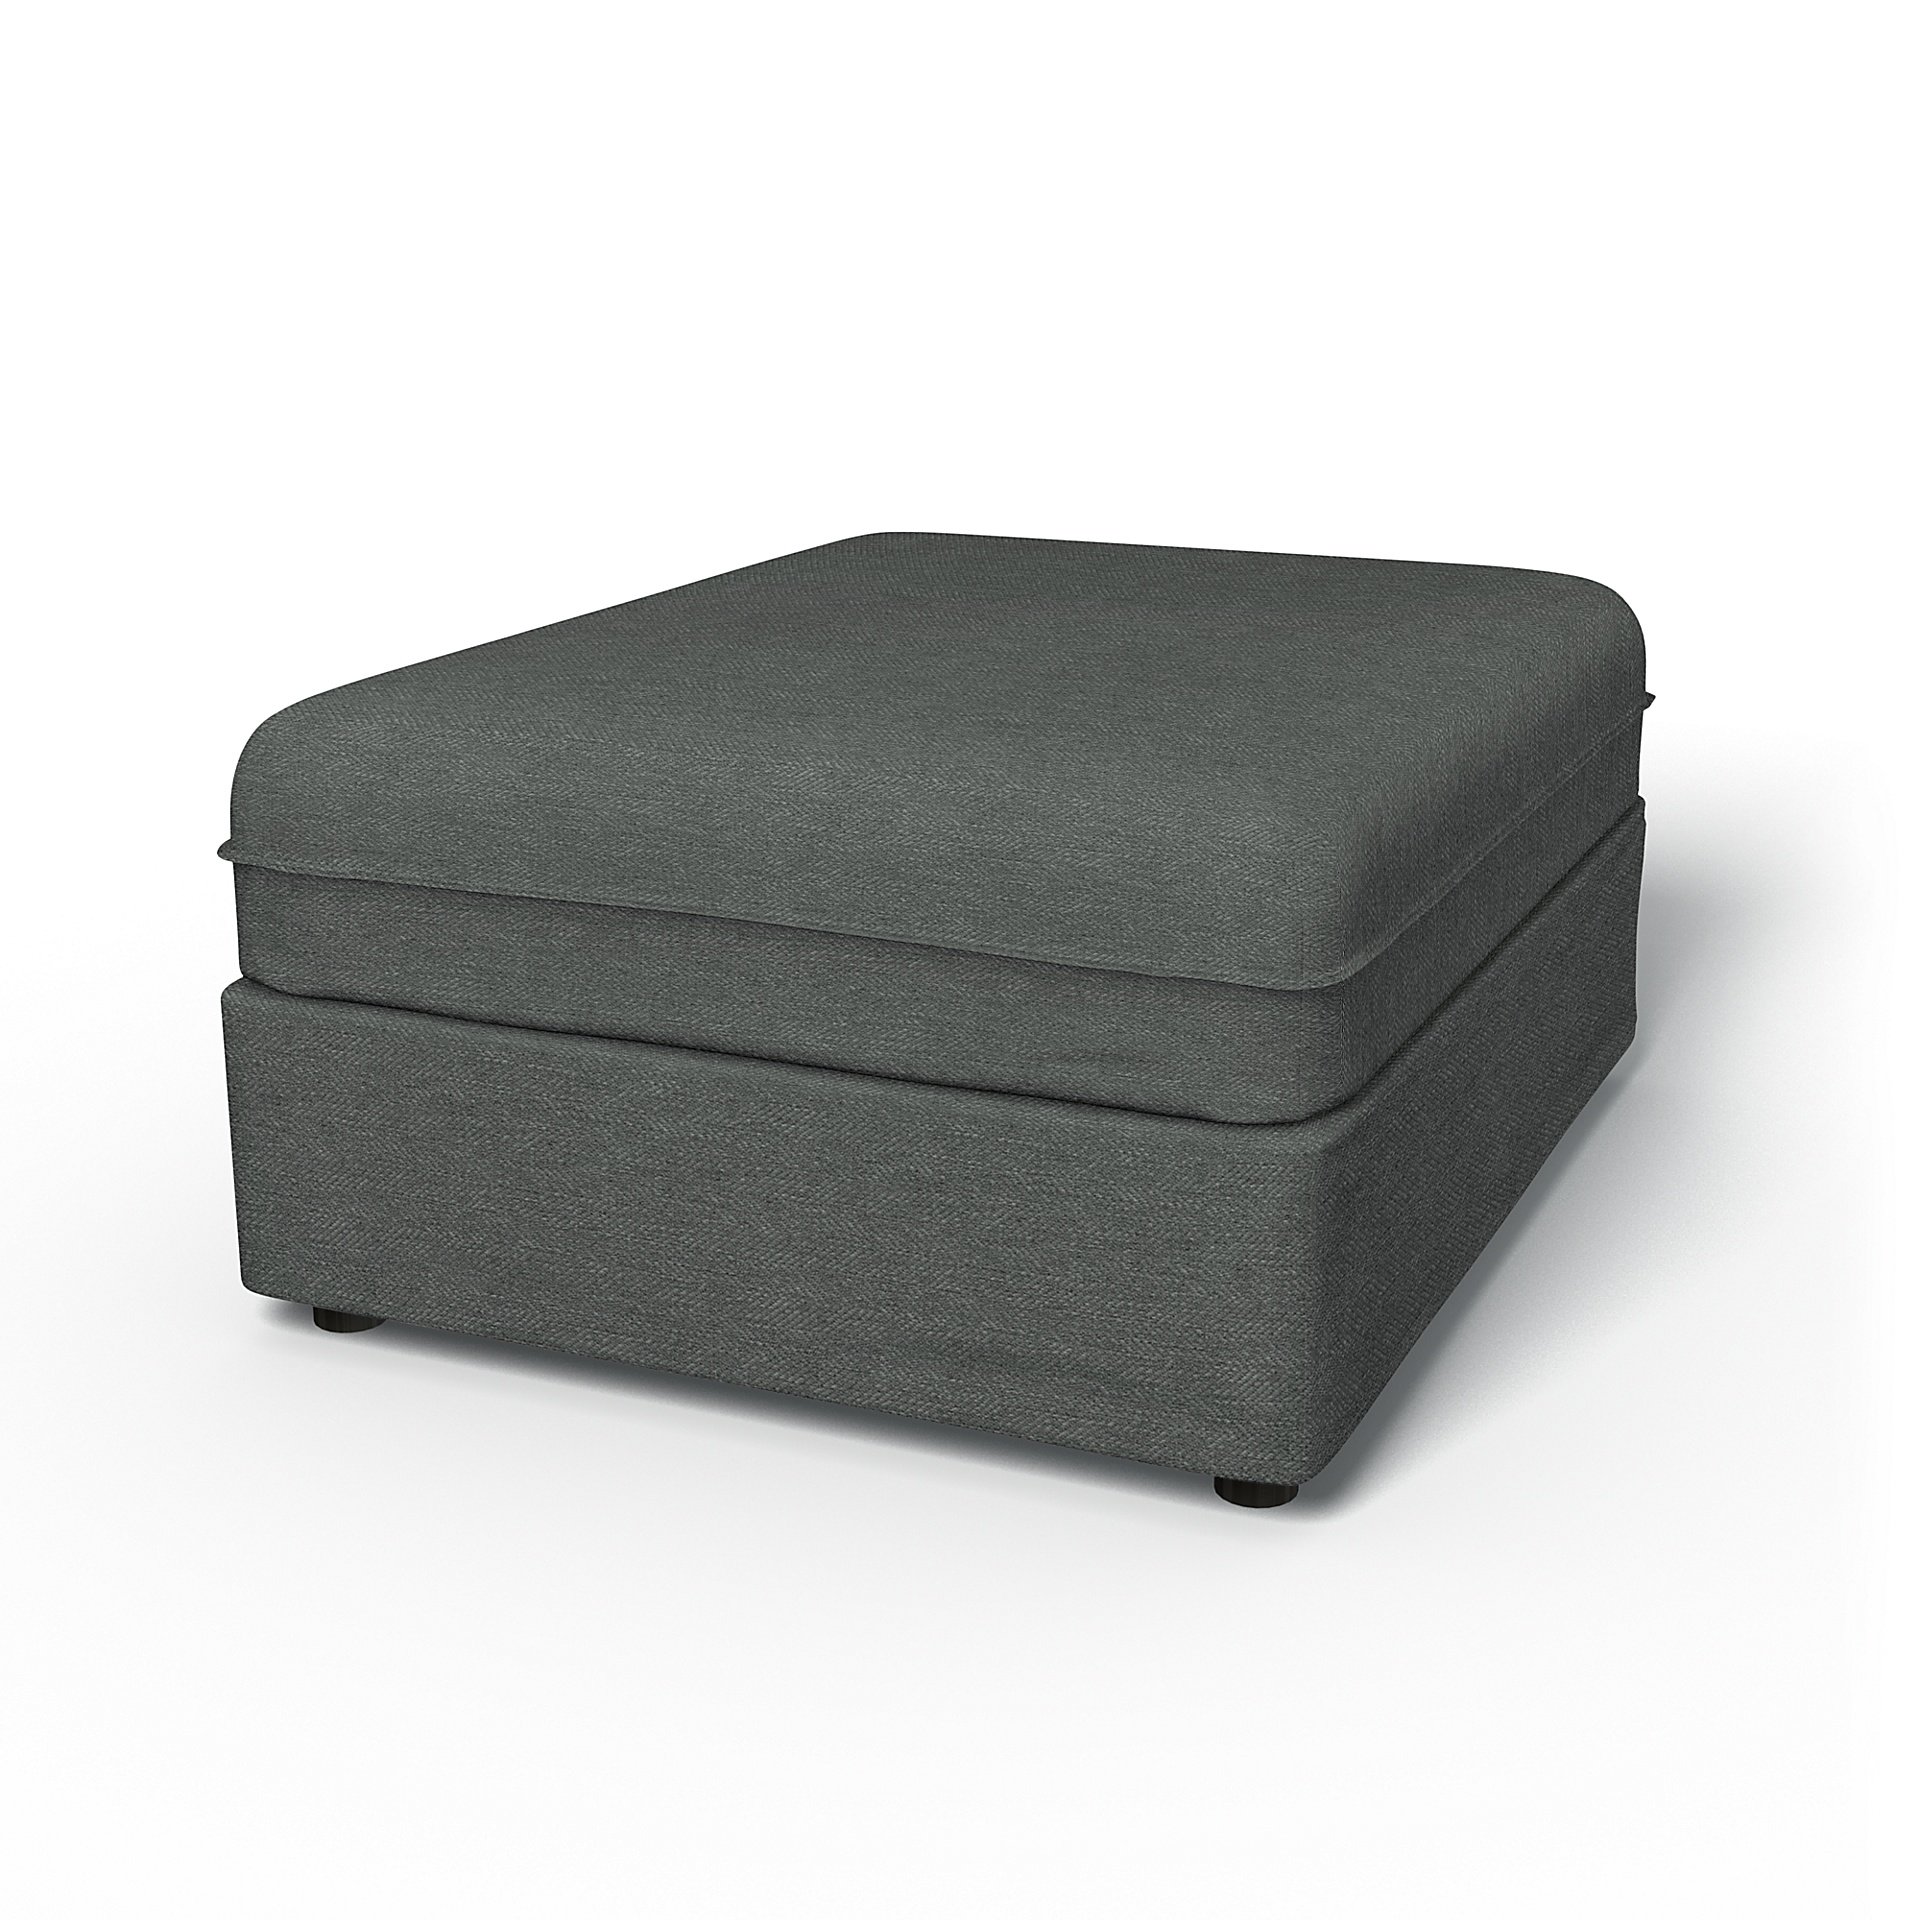 IKEA - Vallentuna Seat Module Cover 80x100cm 32x39in, Laurel, Boucle & Texture - Bemz